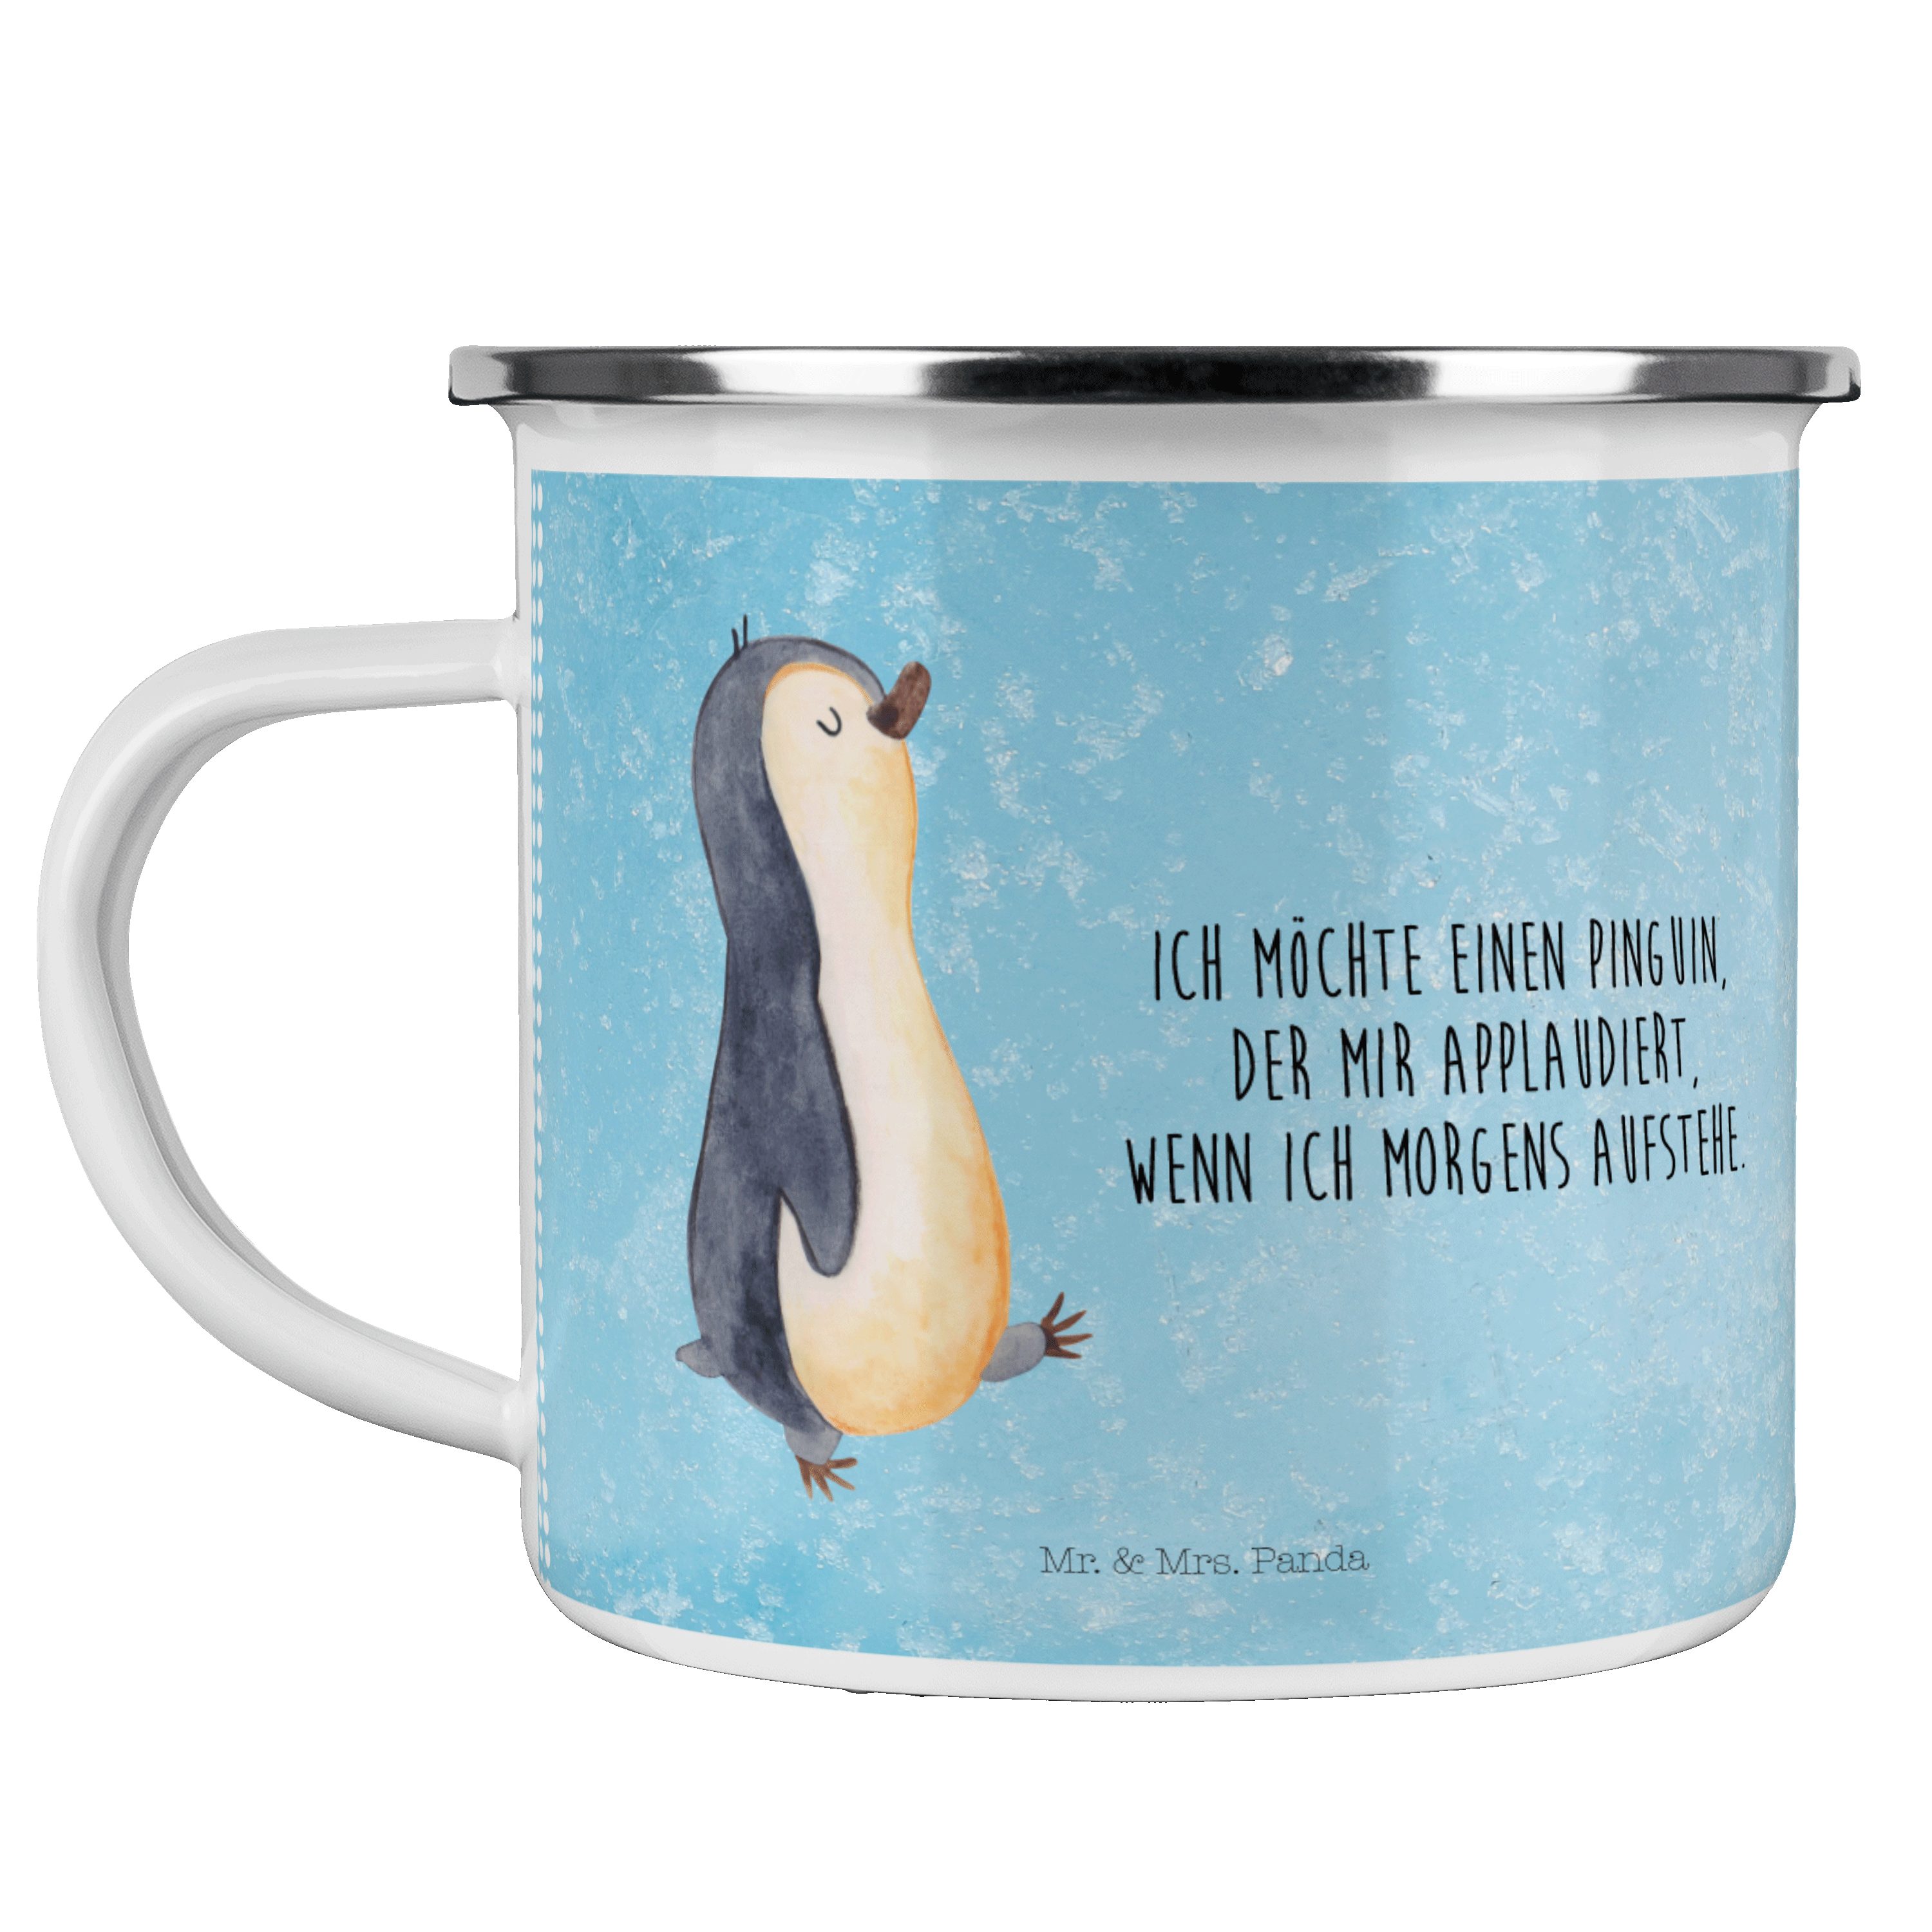 Mr. & Mrs. Panda Becher Pinguin marschierend - Eisblau - Geschenk, Metalltasse, Kaffee Blecht, Emaille